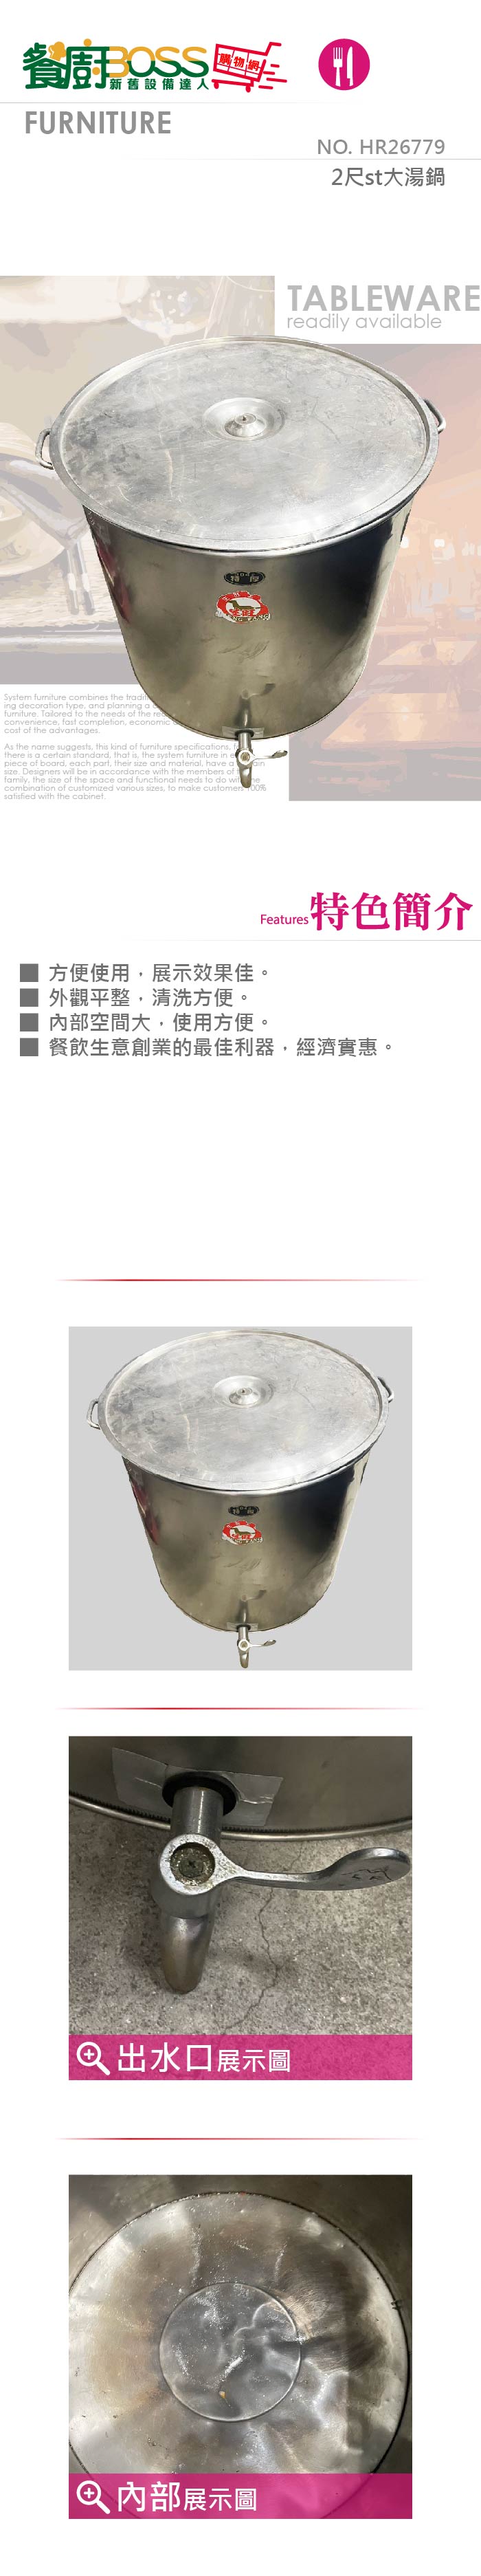 2尺st大湯鍋